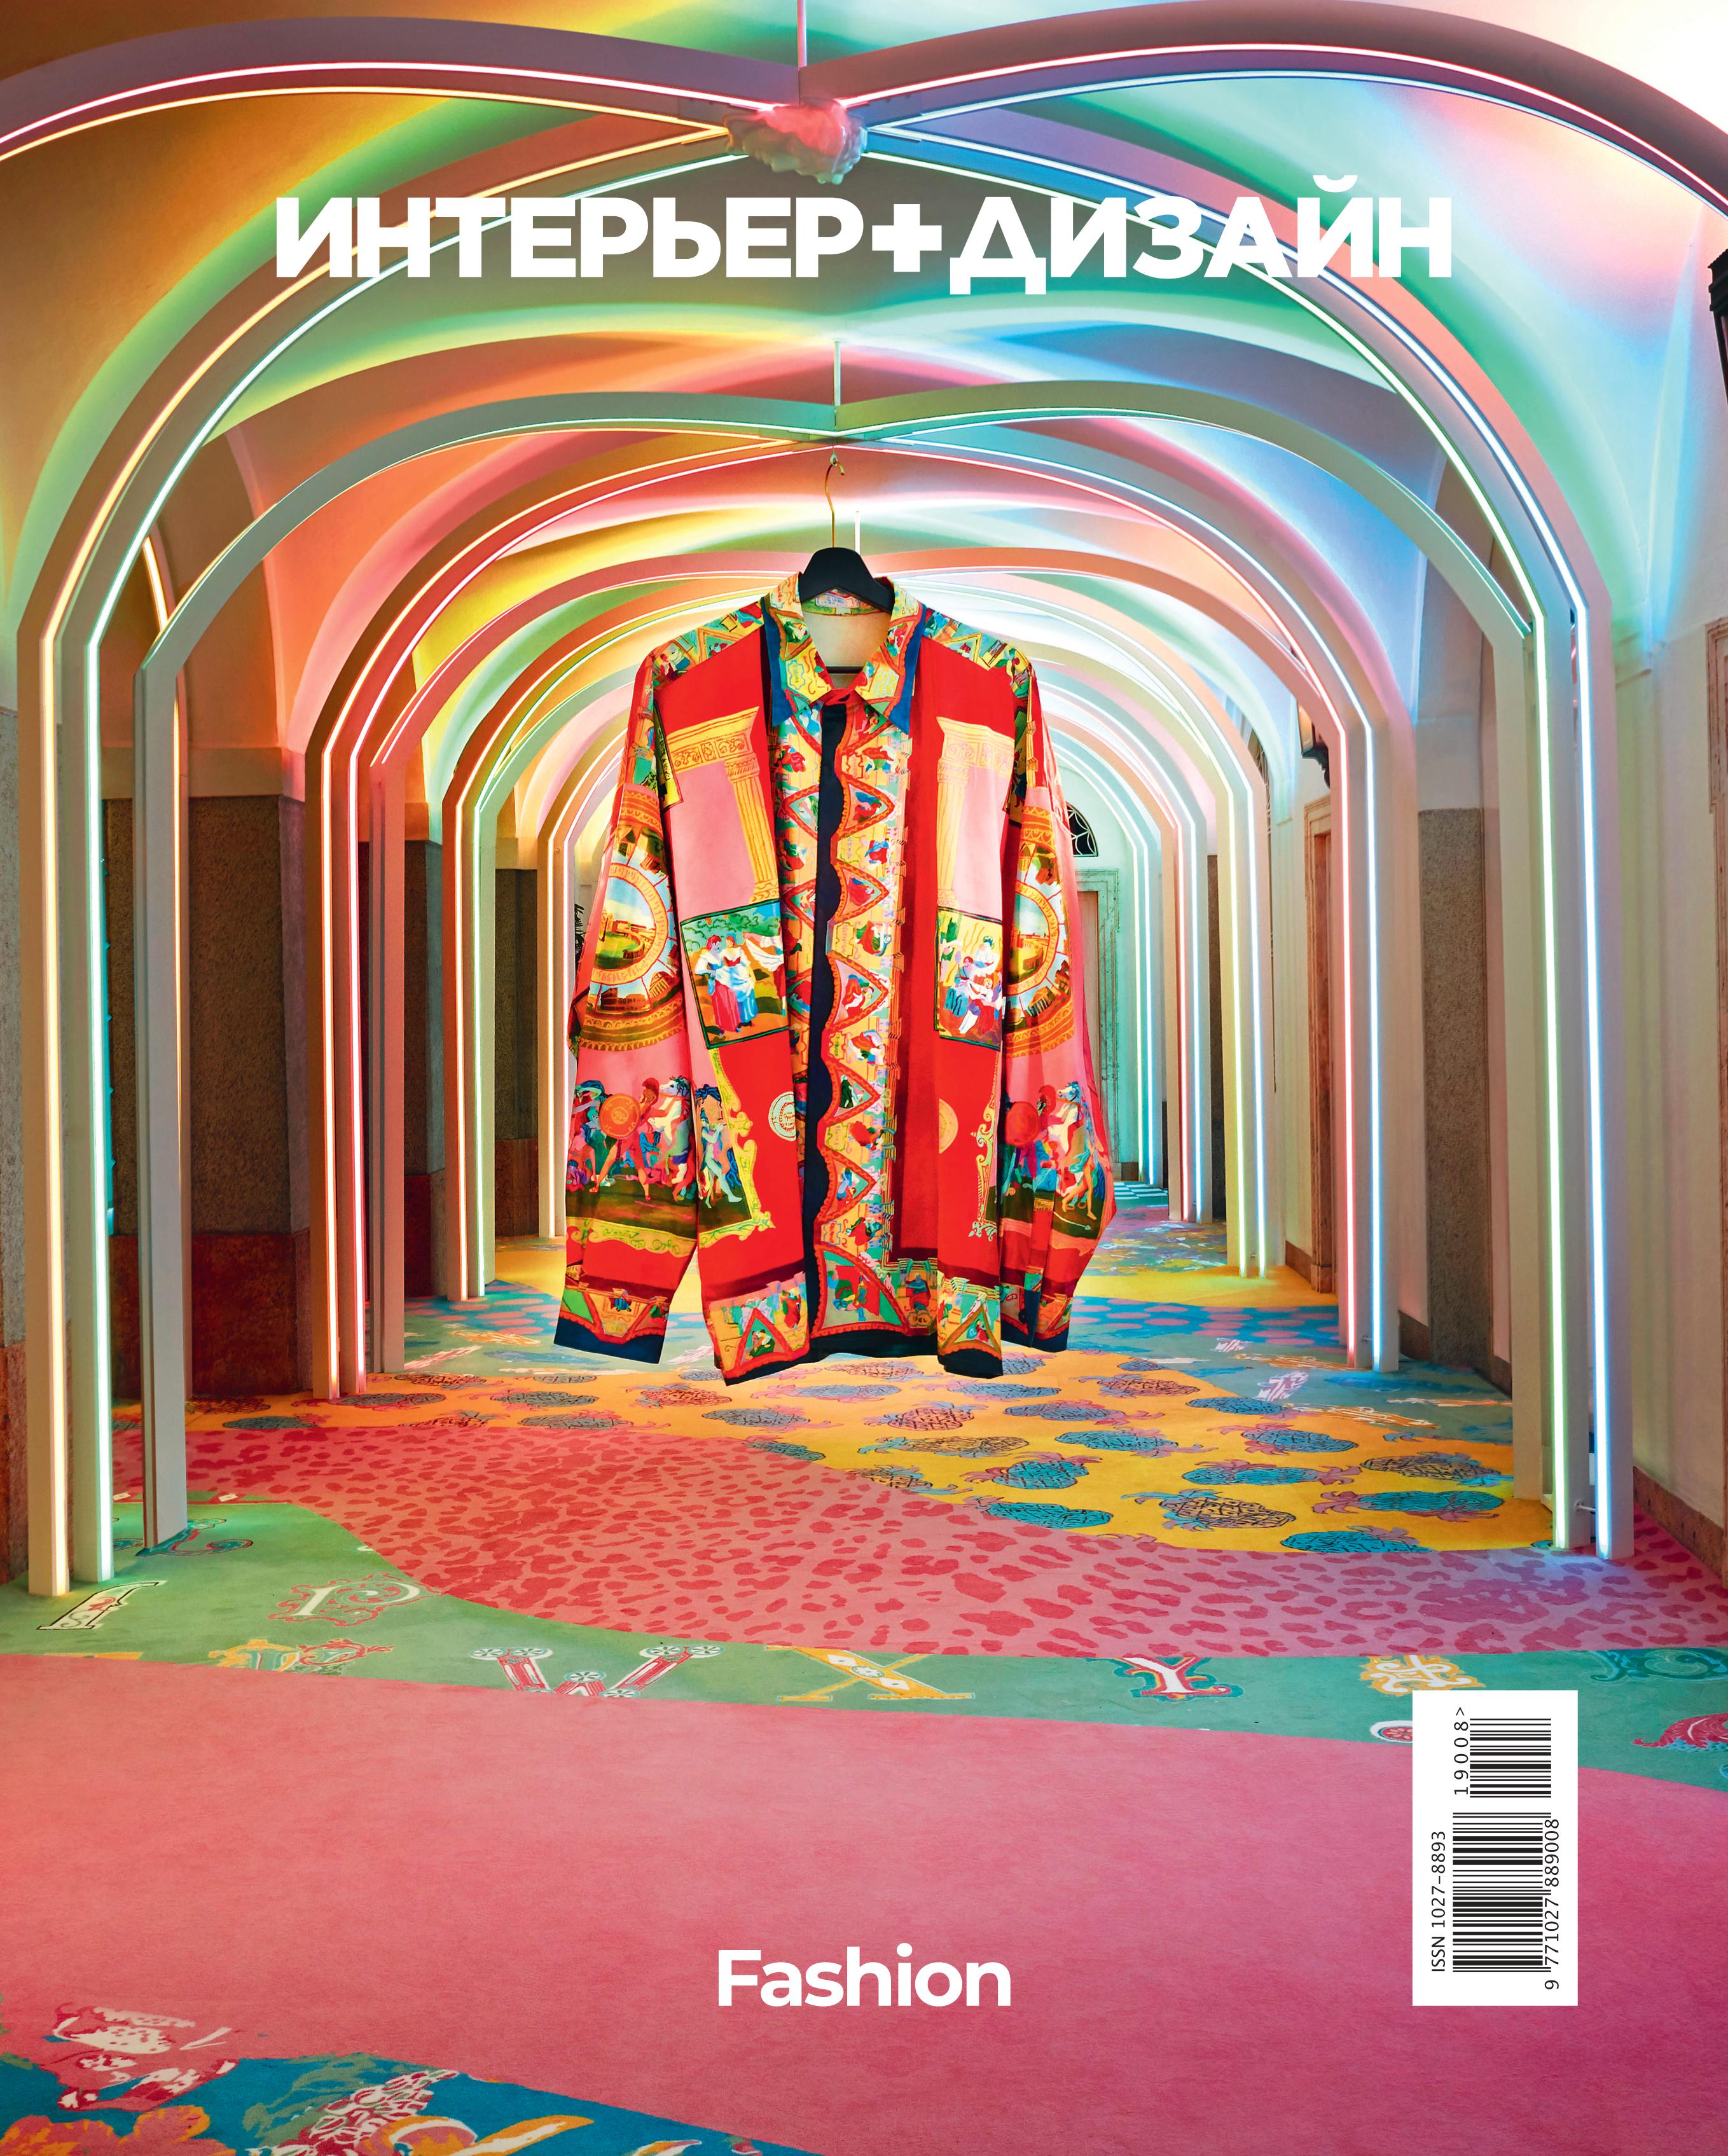 Журнал «Интерьер + Дизайн» посвятил новый номер моде (фото 3)